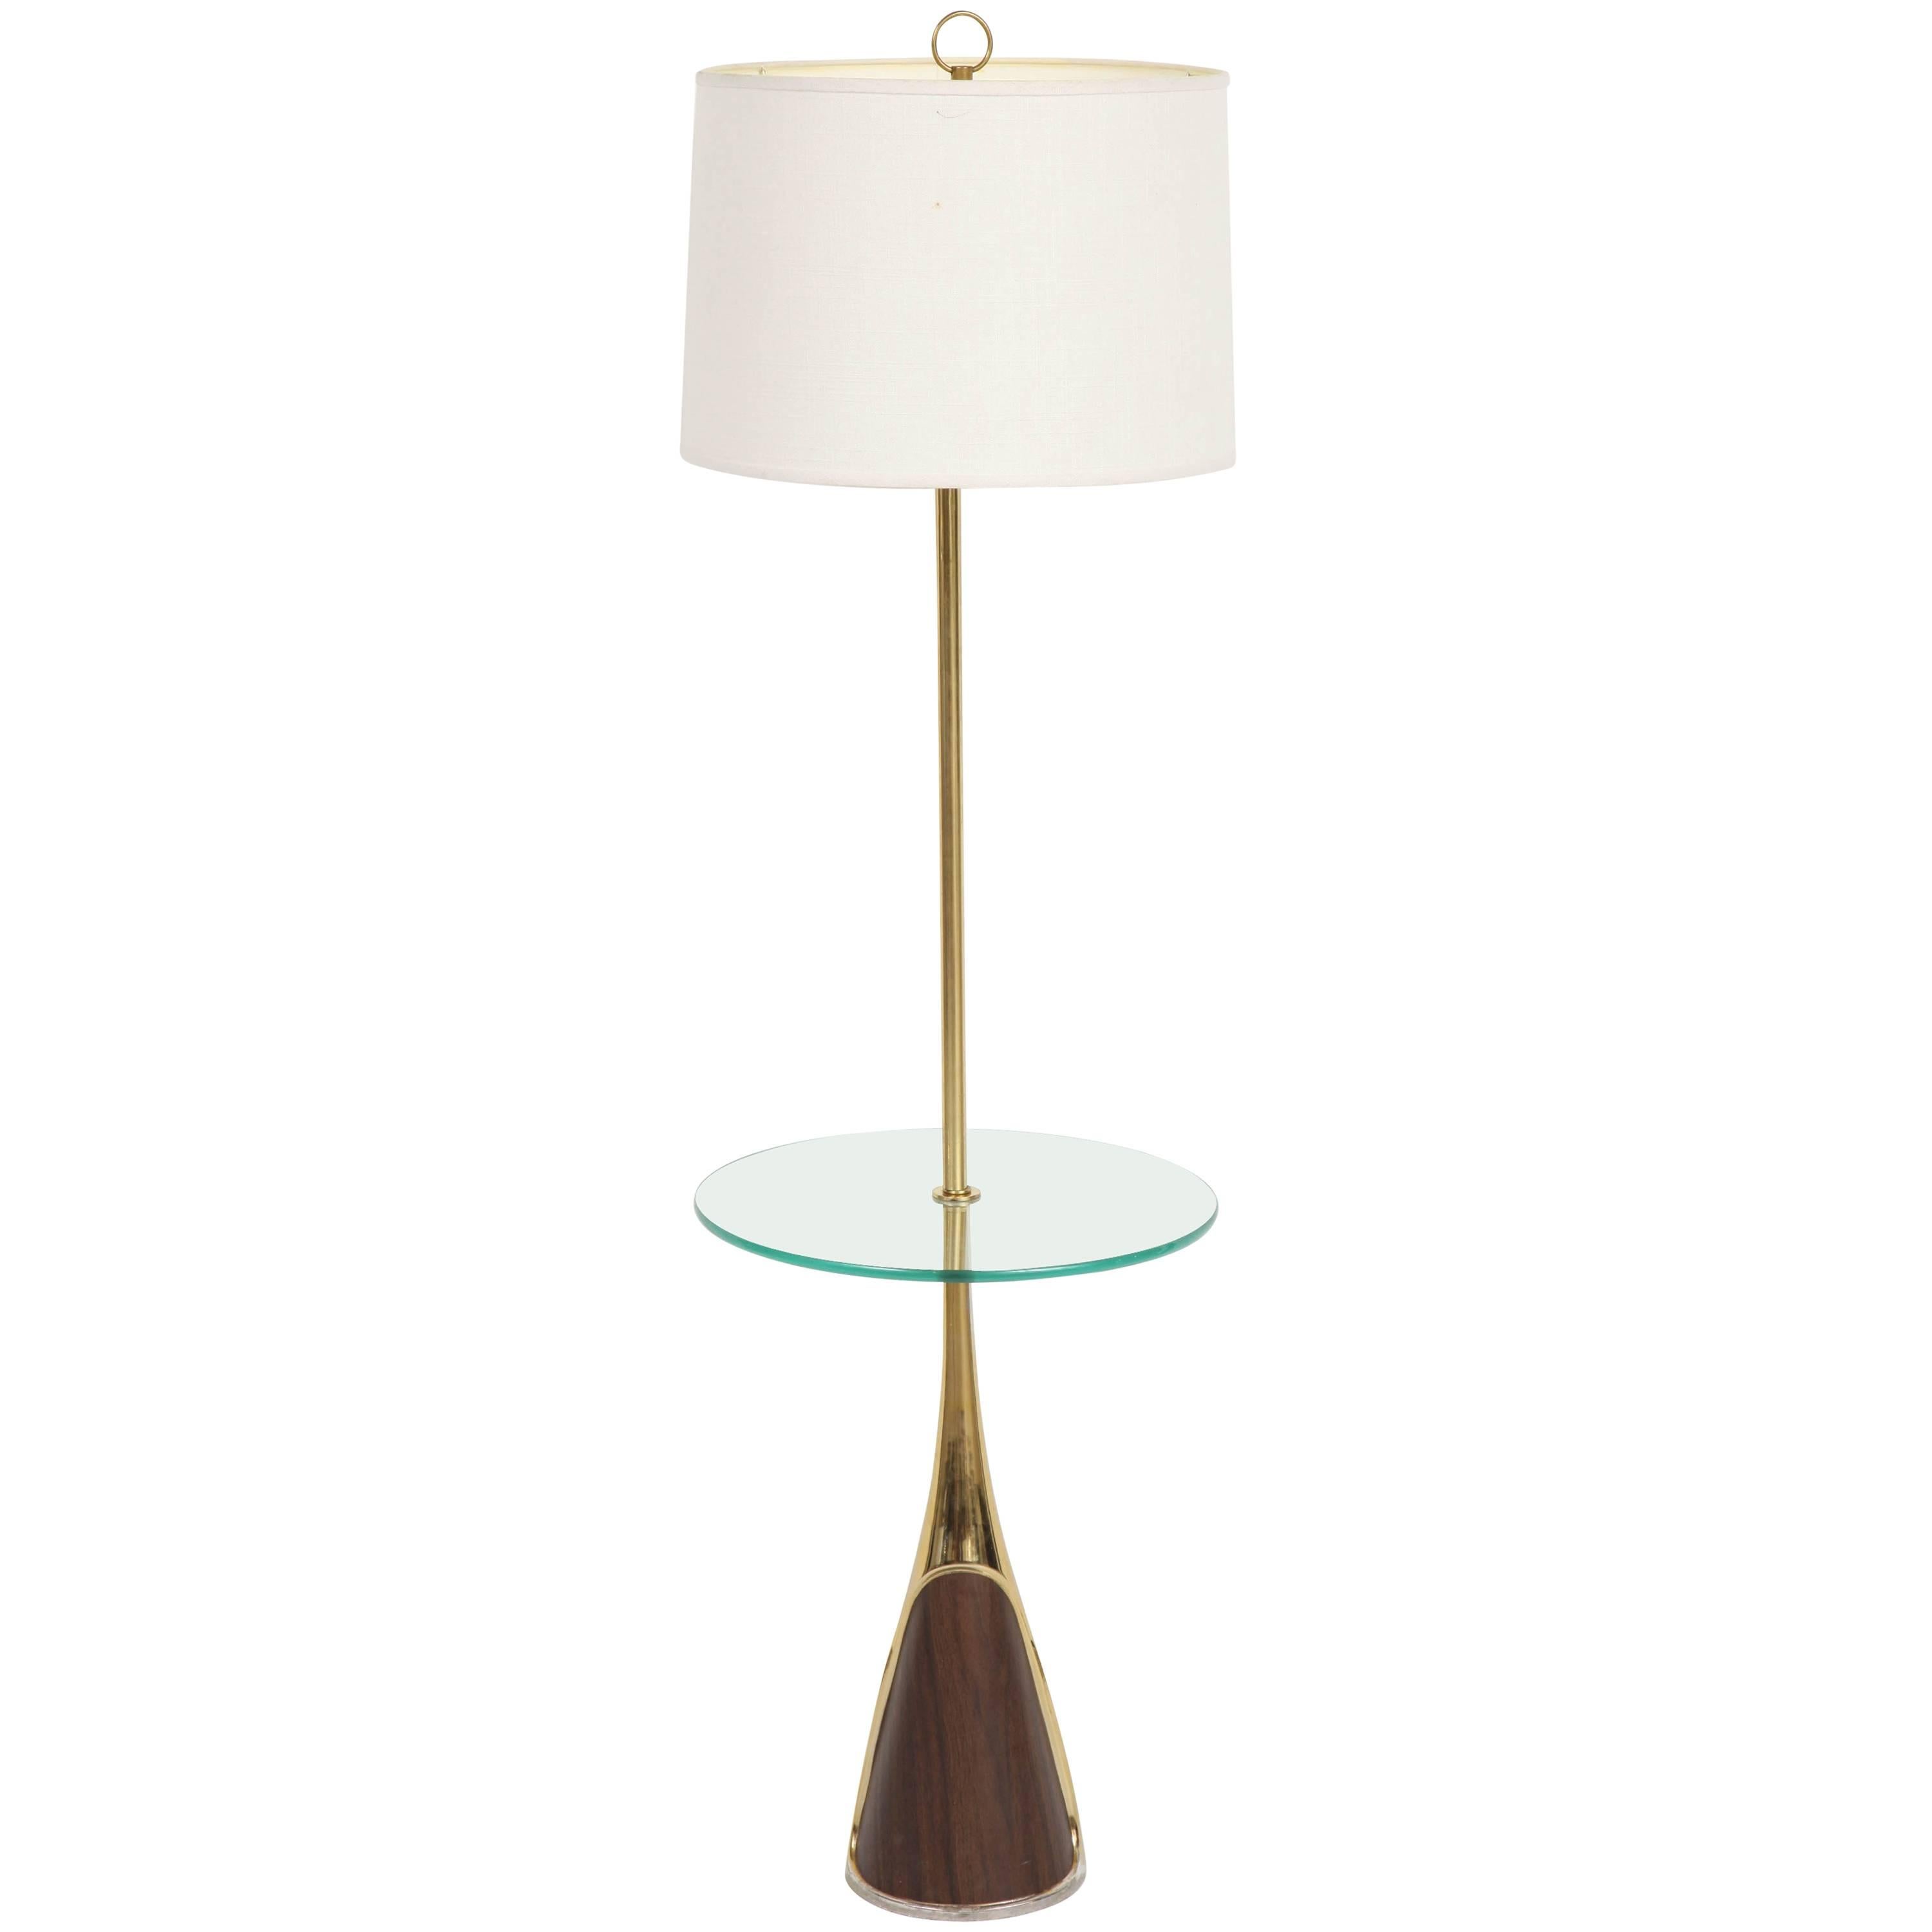 Laurel Floor Lamp with Table Shelf